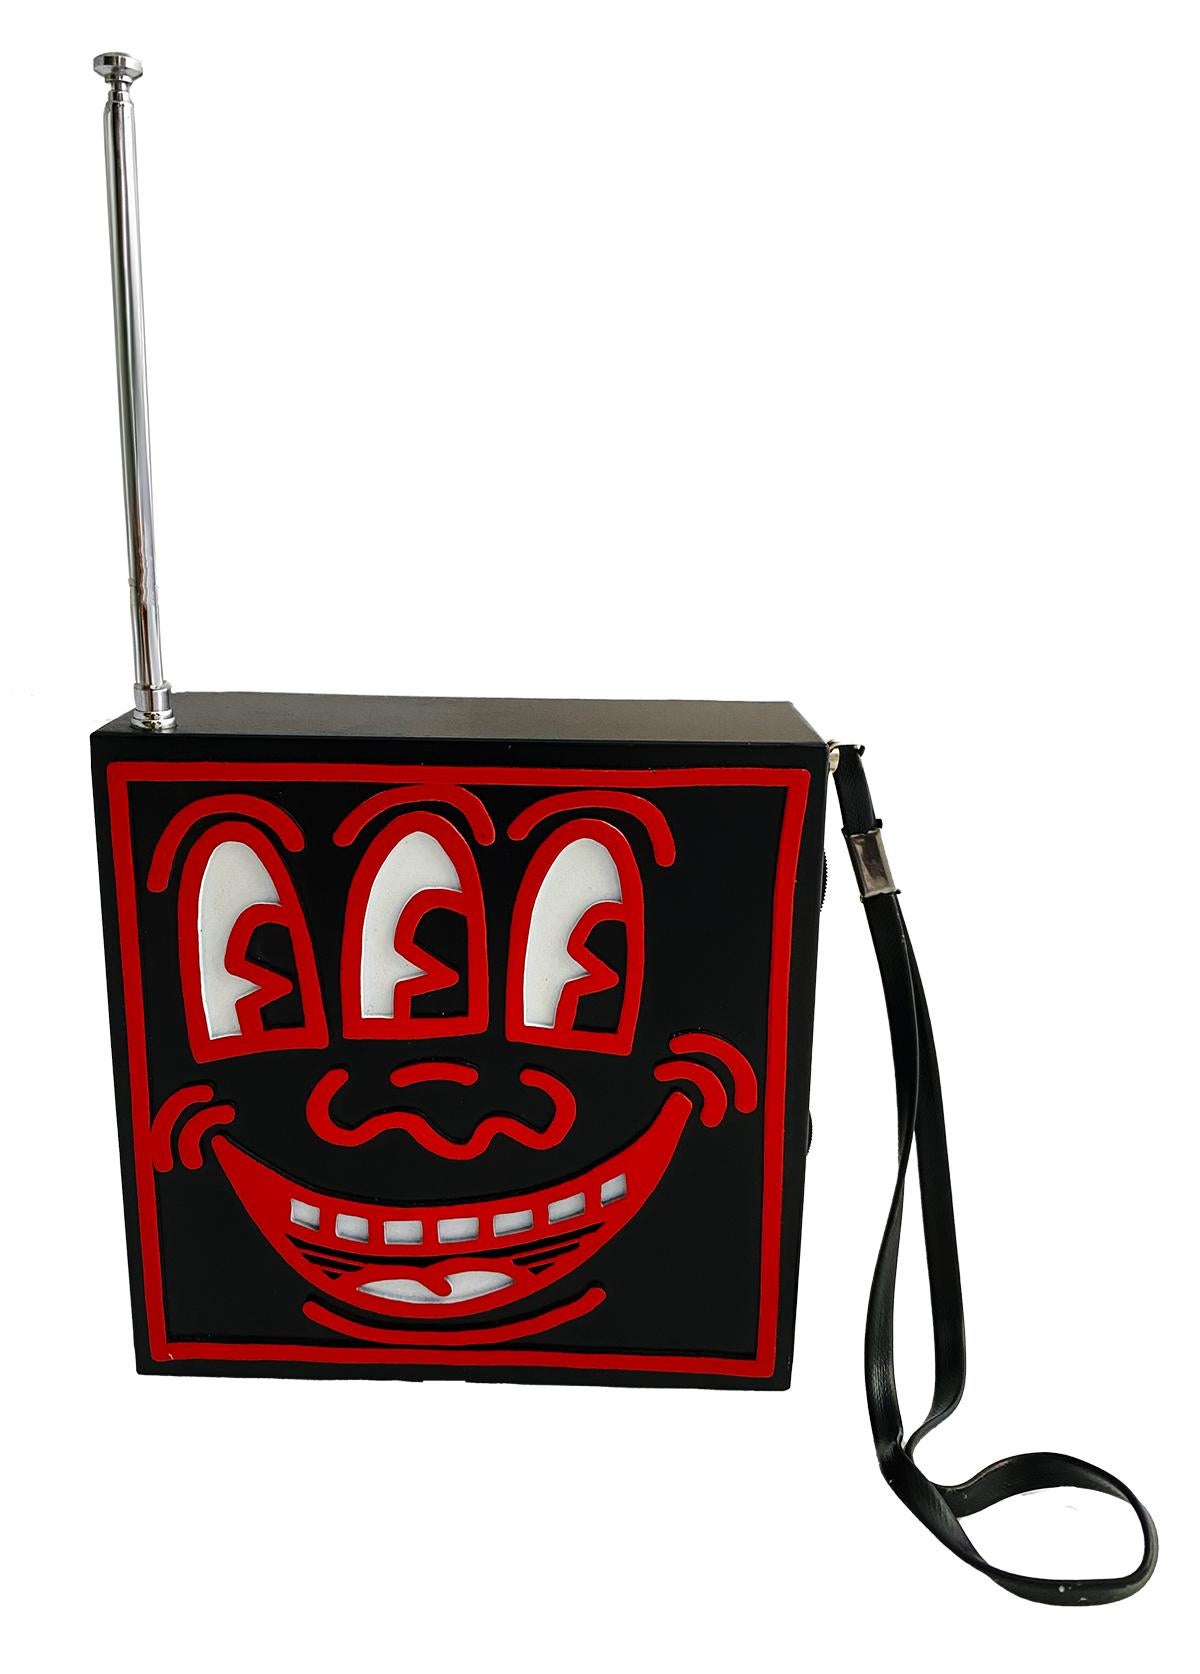 Keith Haring Pop Shop 1986 :
Une radio Keith Haring Pop Shop très bien conservée et accompagnée de son emballage d'origine. Vendu au Pop Shop à New York c. 1985. La boîte porte la signature imprimée de Keith Haring et la radio porte une signature